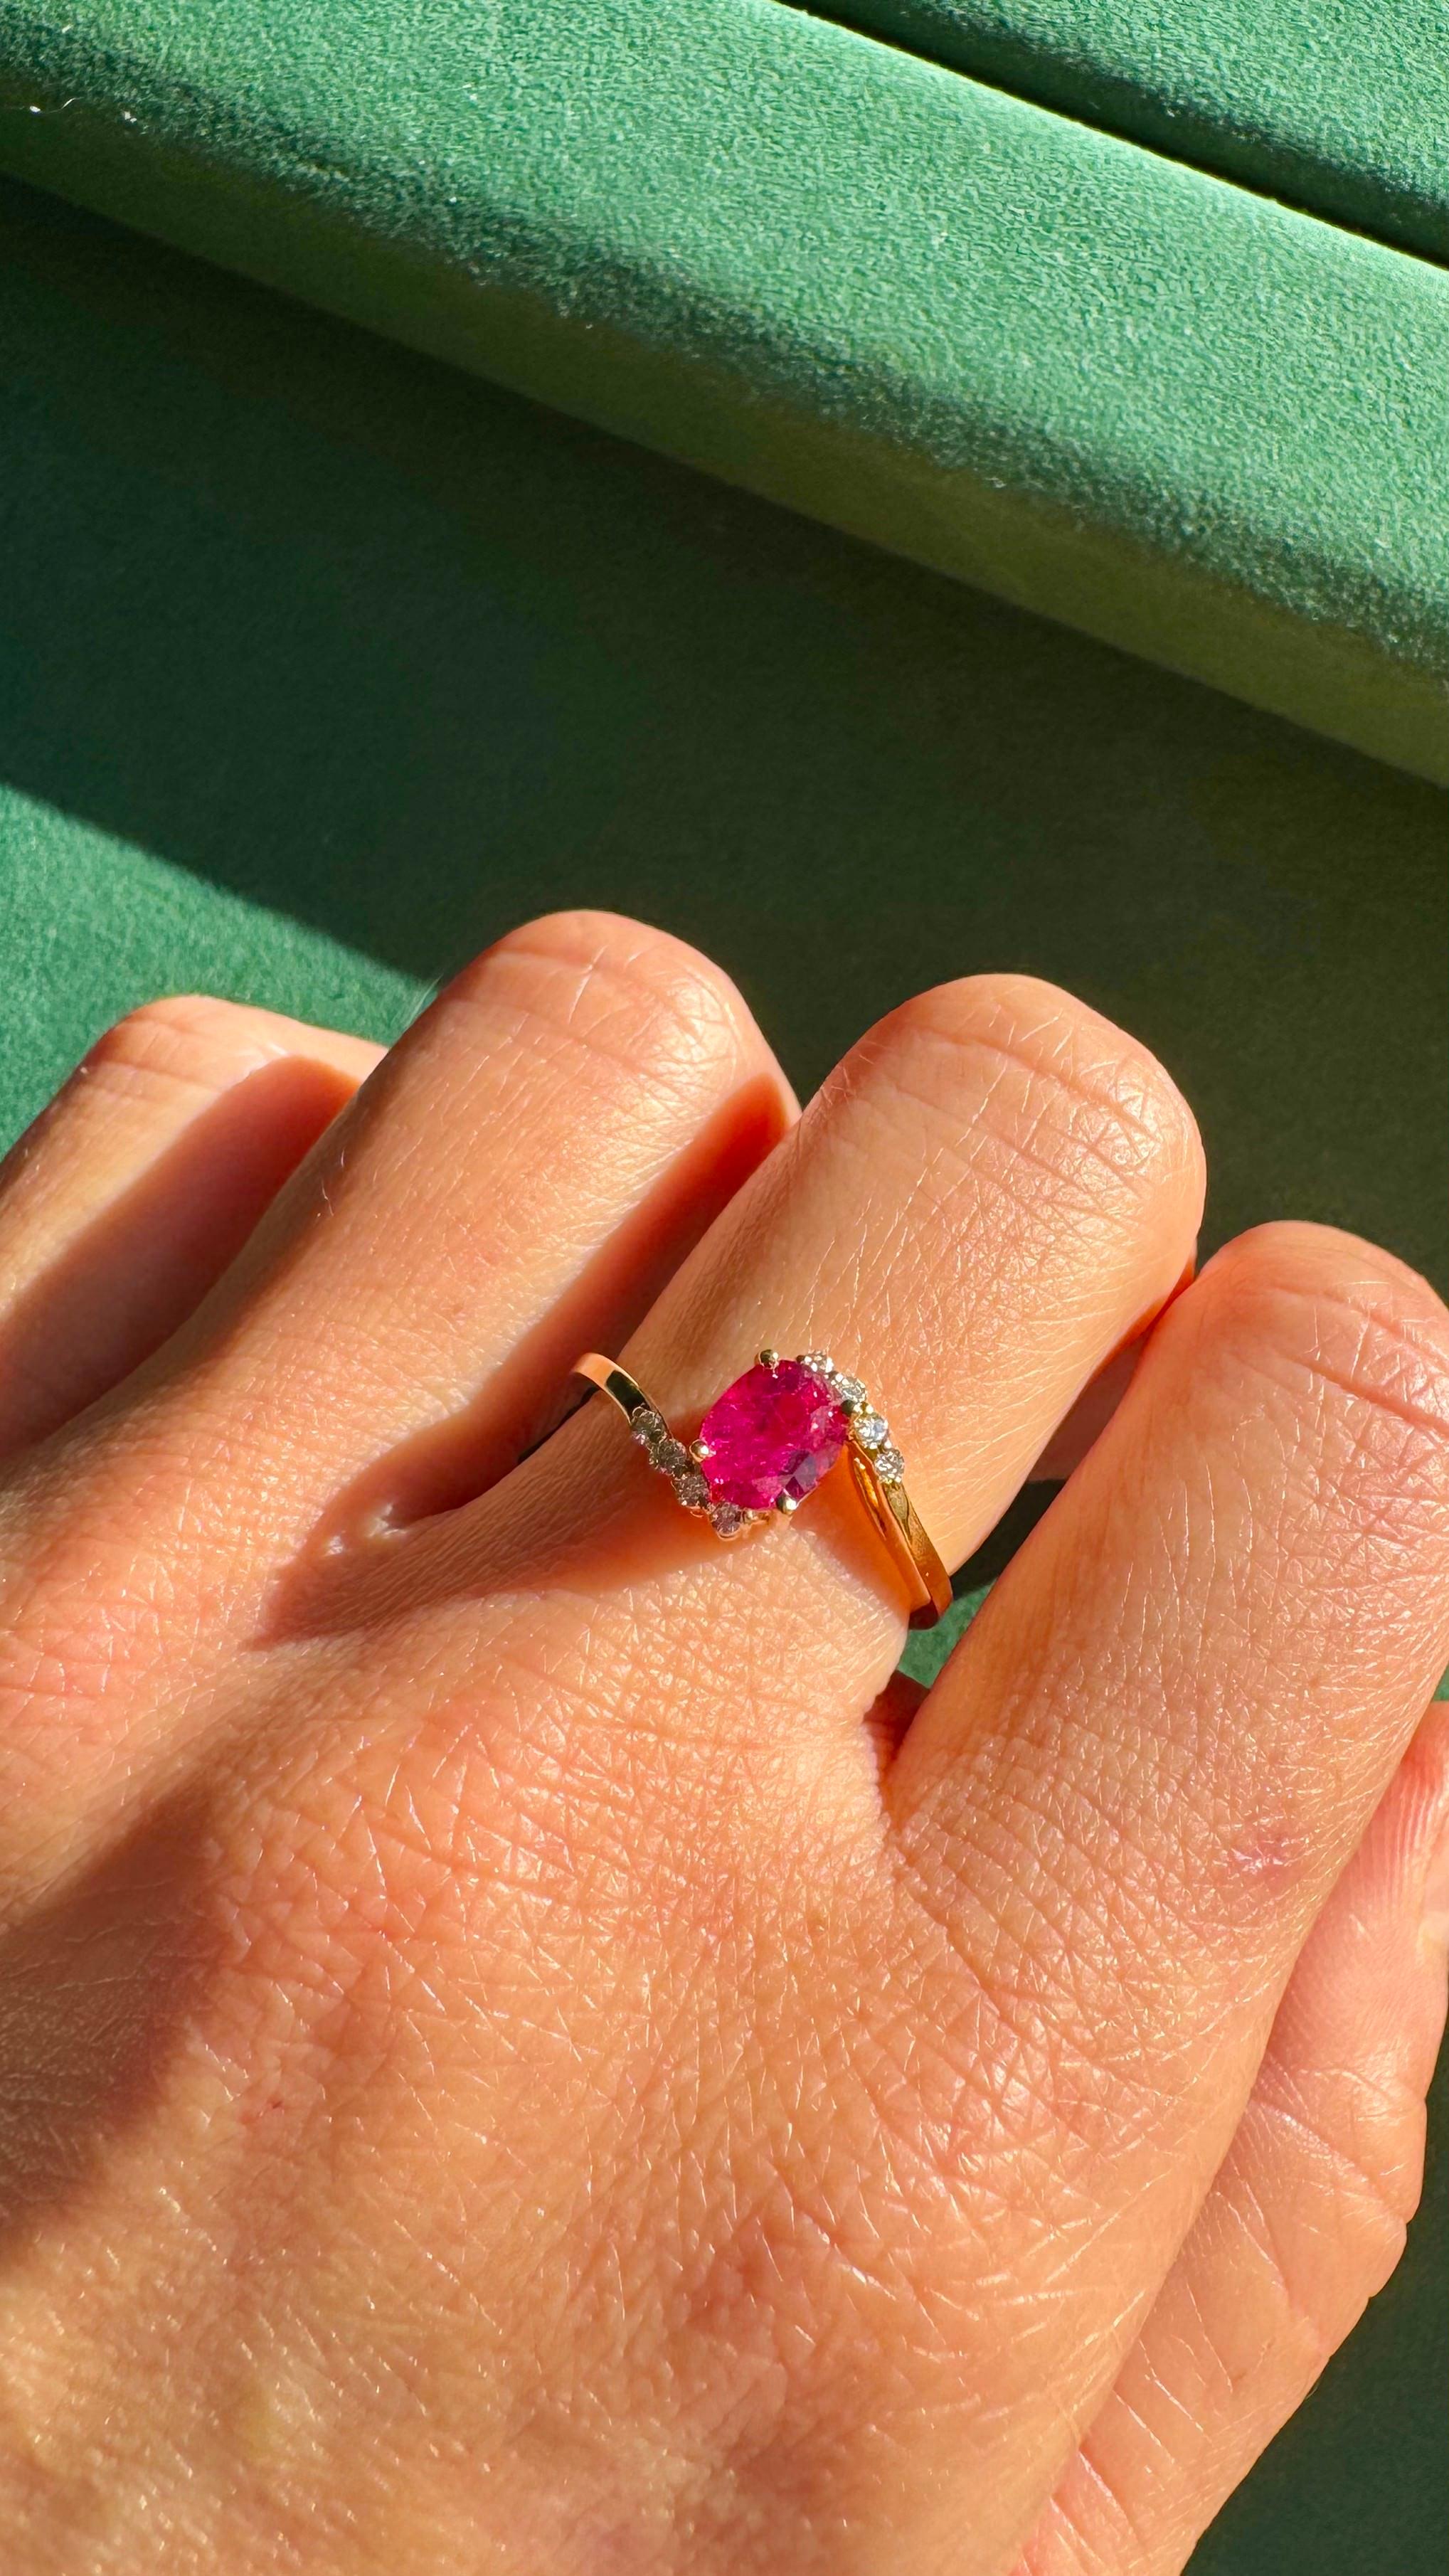 Lassen Sie sich von unserem 1-karätigen, natürlichen und unbehandelten Rubin verführen, der sich elegant in unserem Ring aus 18 Karat Gelbgold präsentiert. Eine wahre Verkörperung von Raffinesse und Luxus.

Dieser Ring wird in einer luxuriösen